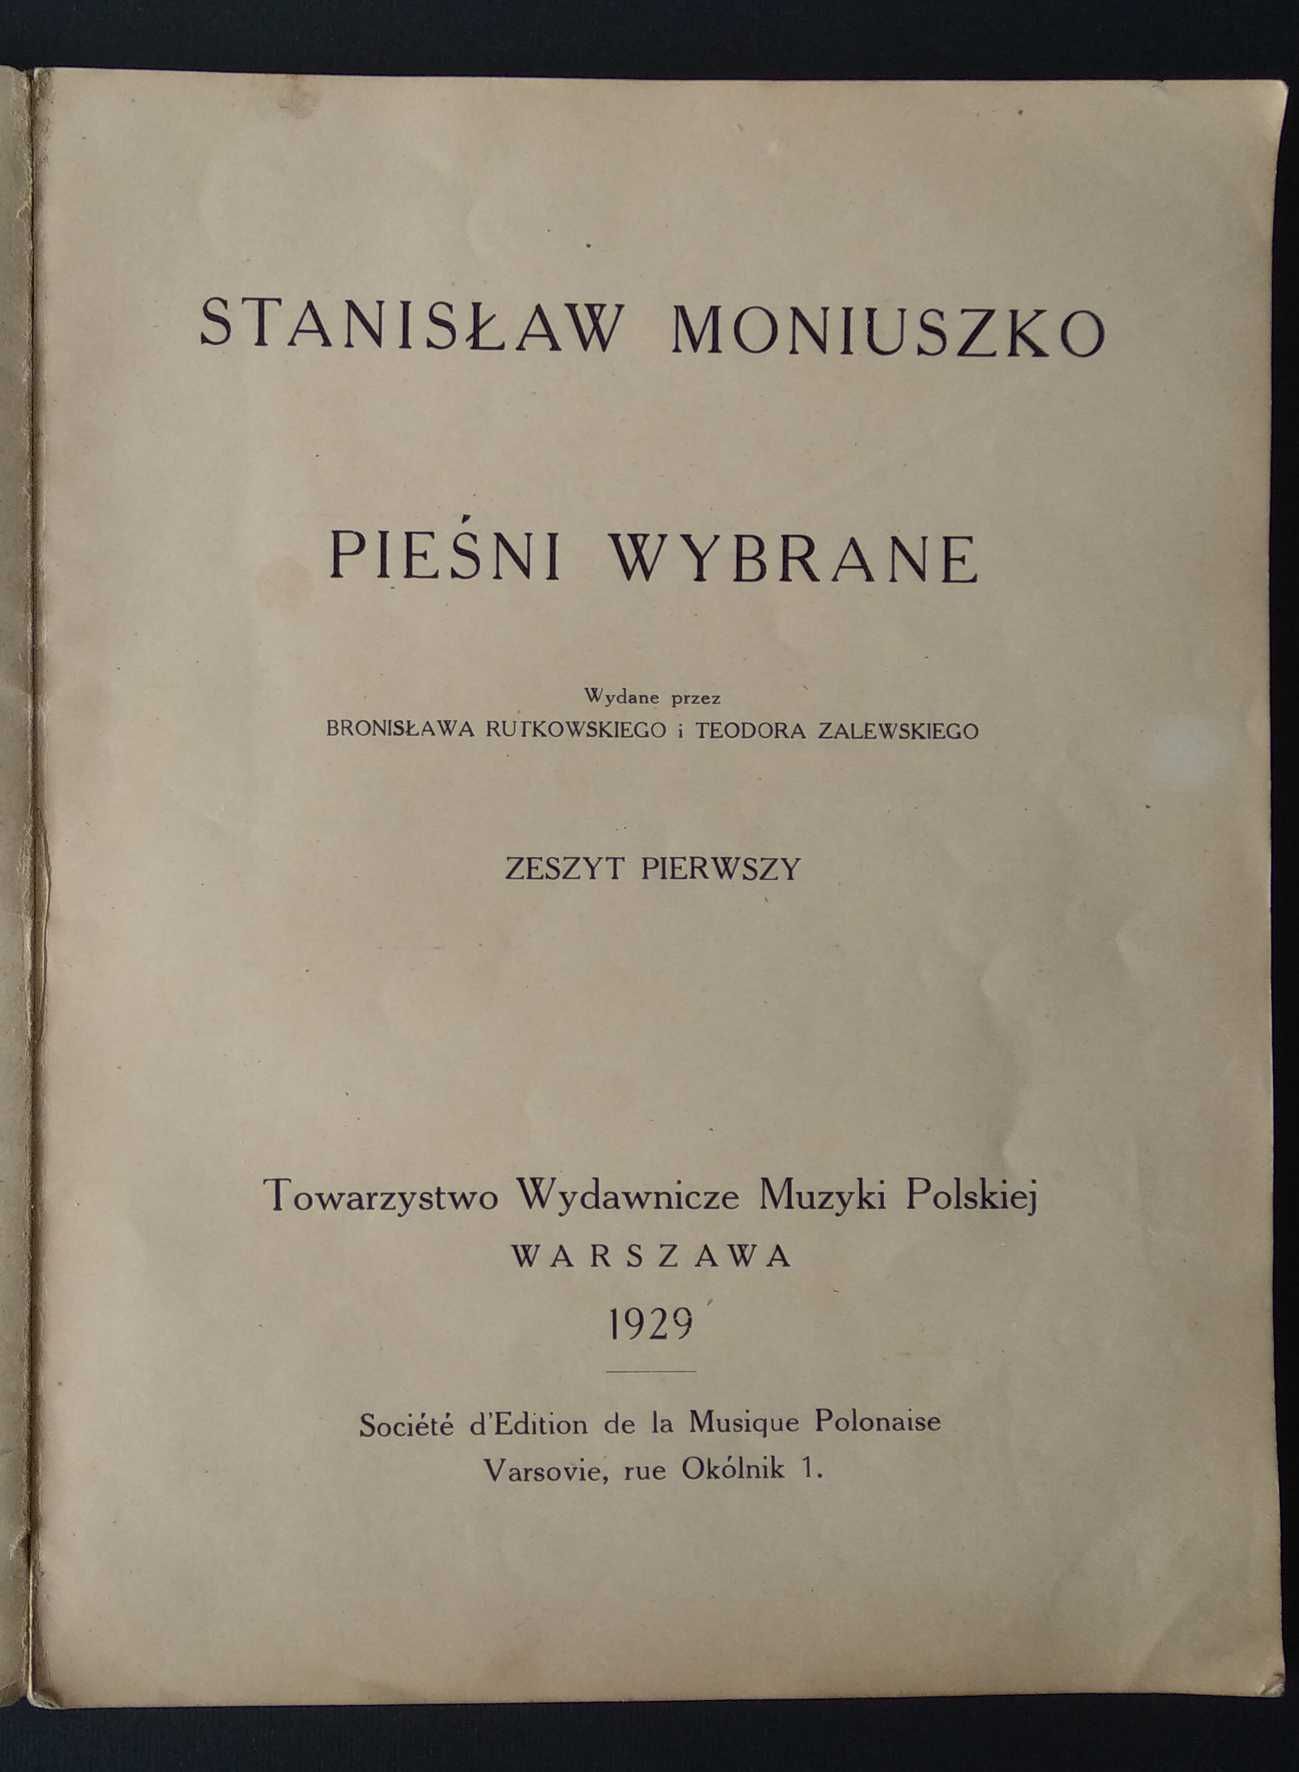 Stanisław Moniuszko " Pieśni Wybrane "